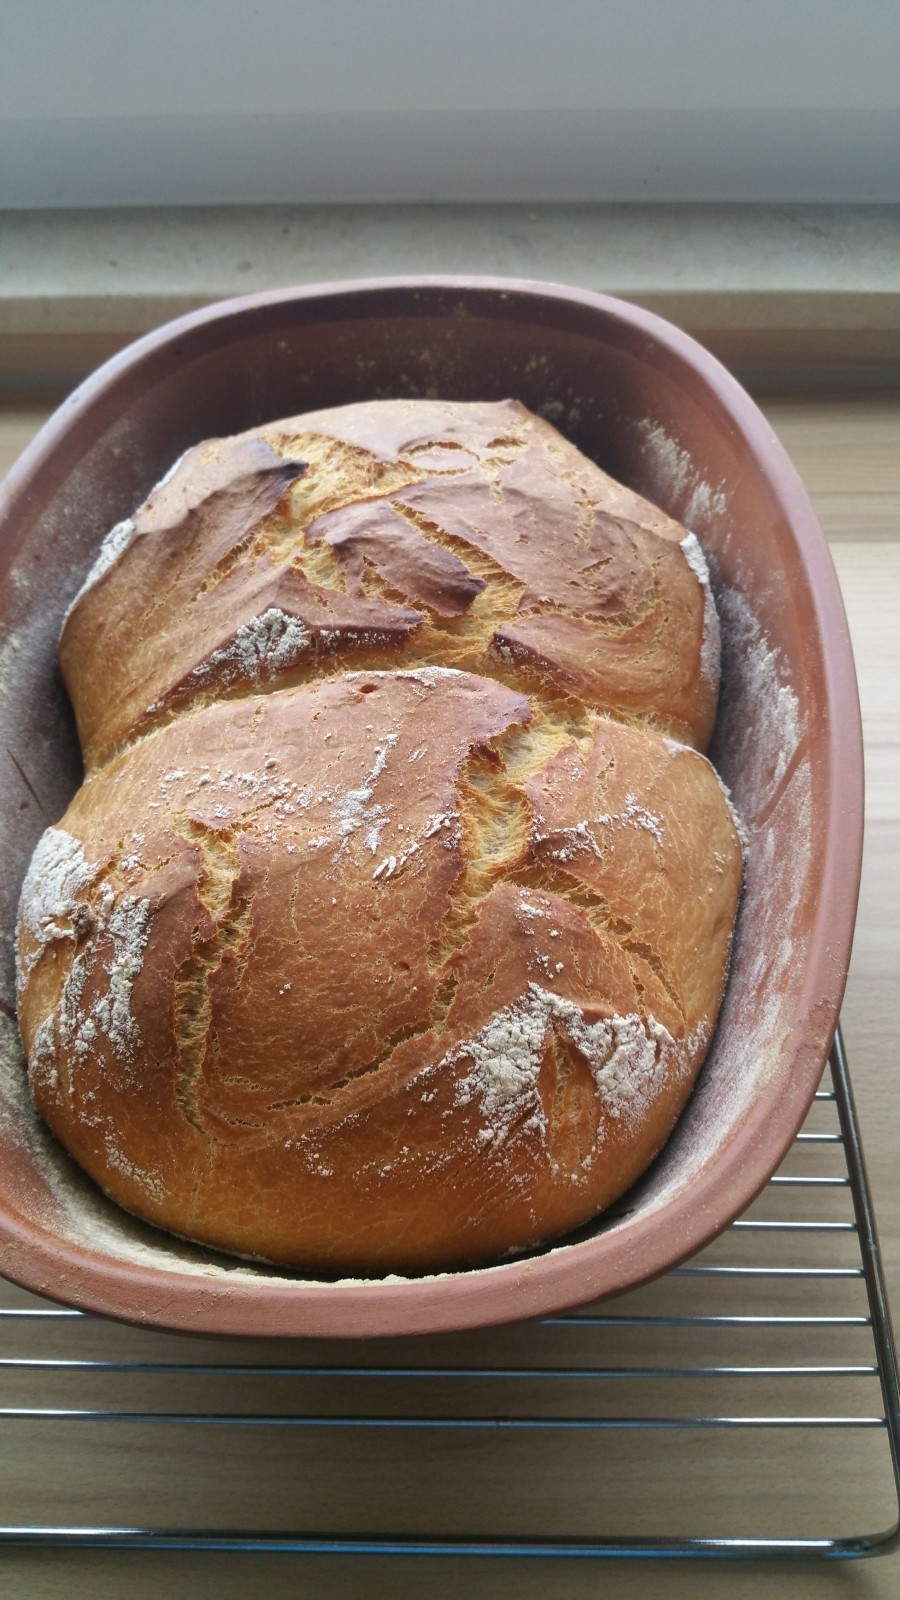 Das Zwillings-Brot mit Schmand im Römertopf ist sehr lecker und wartet darauf, von euch gebacken zu werden. 